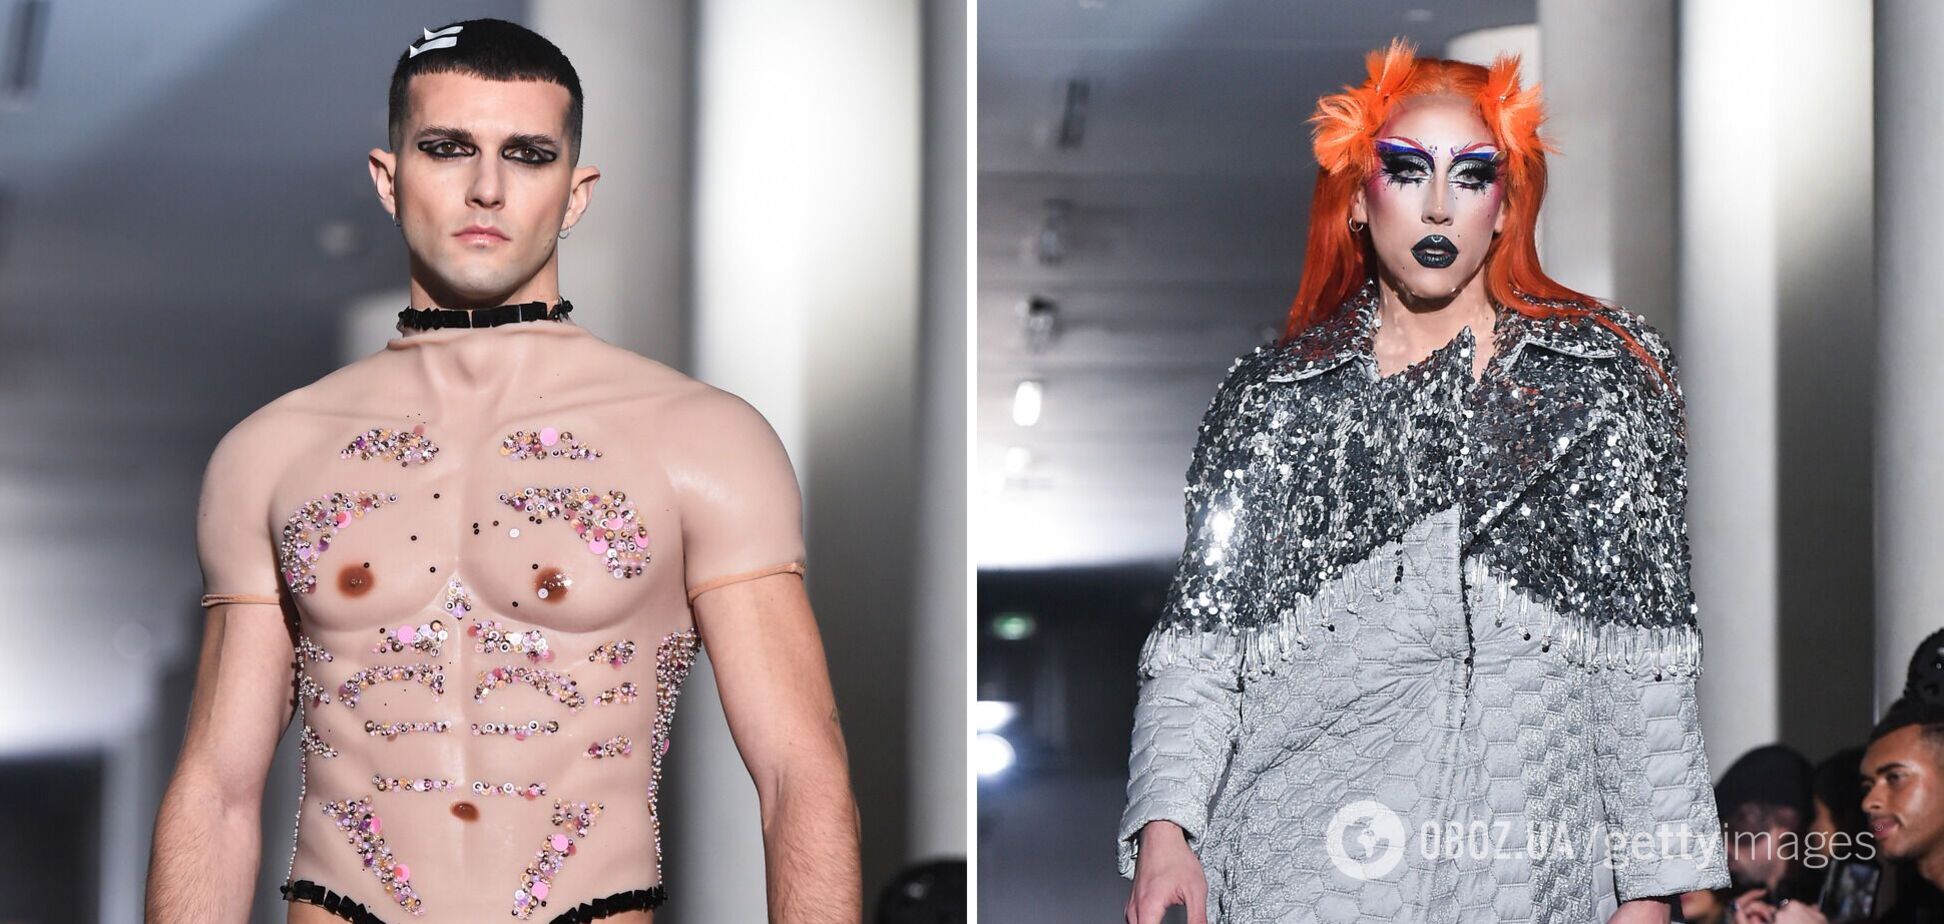 Штучні груди, чоловіки з макіяжем та 'оголені тіла': як пройшов епатажний показ On Aura Tout Vu на Тижні моди в Парижі